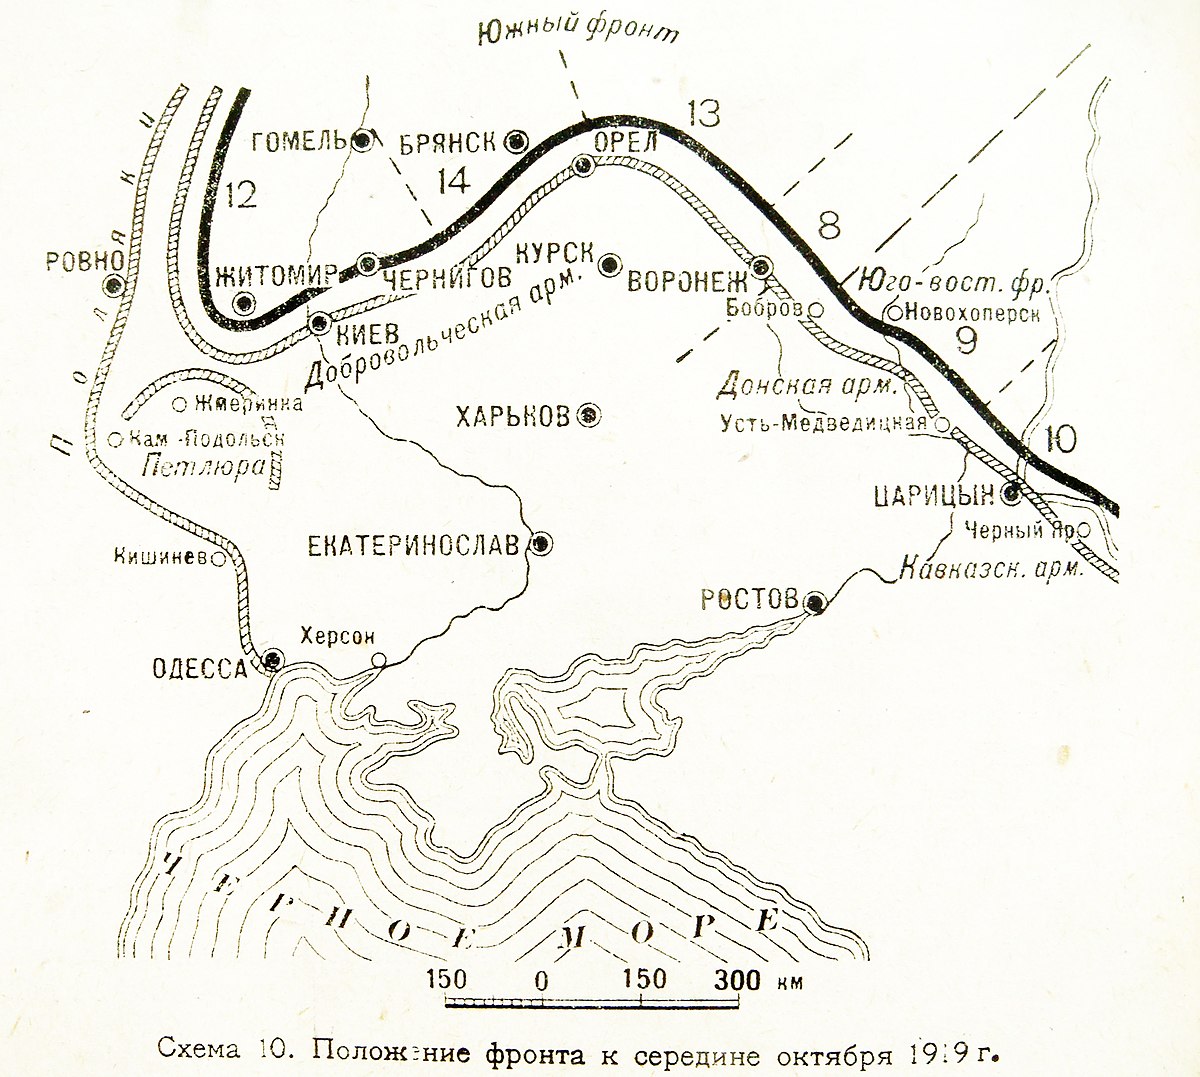 Великая страна СССР,Деникин - положение фронта к середине октября 1919